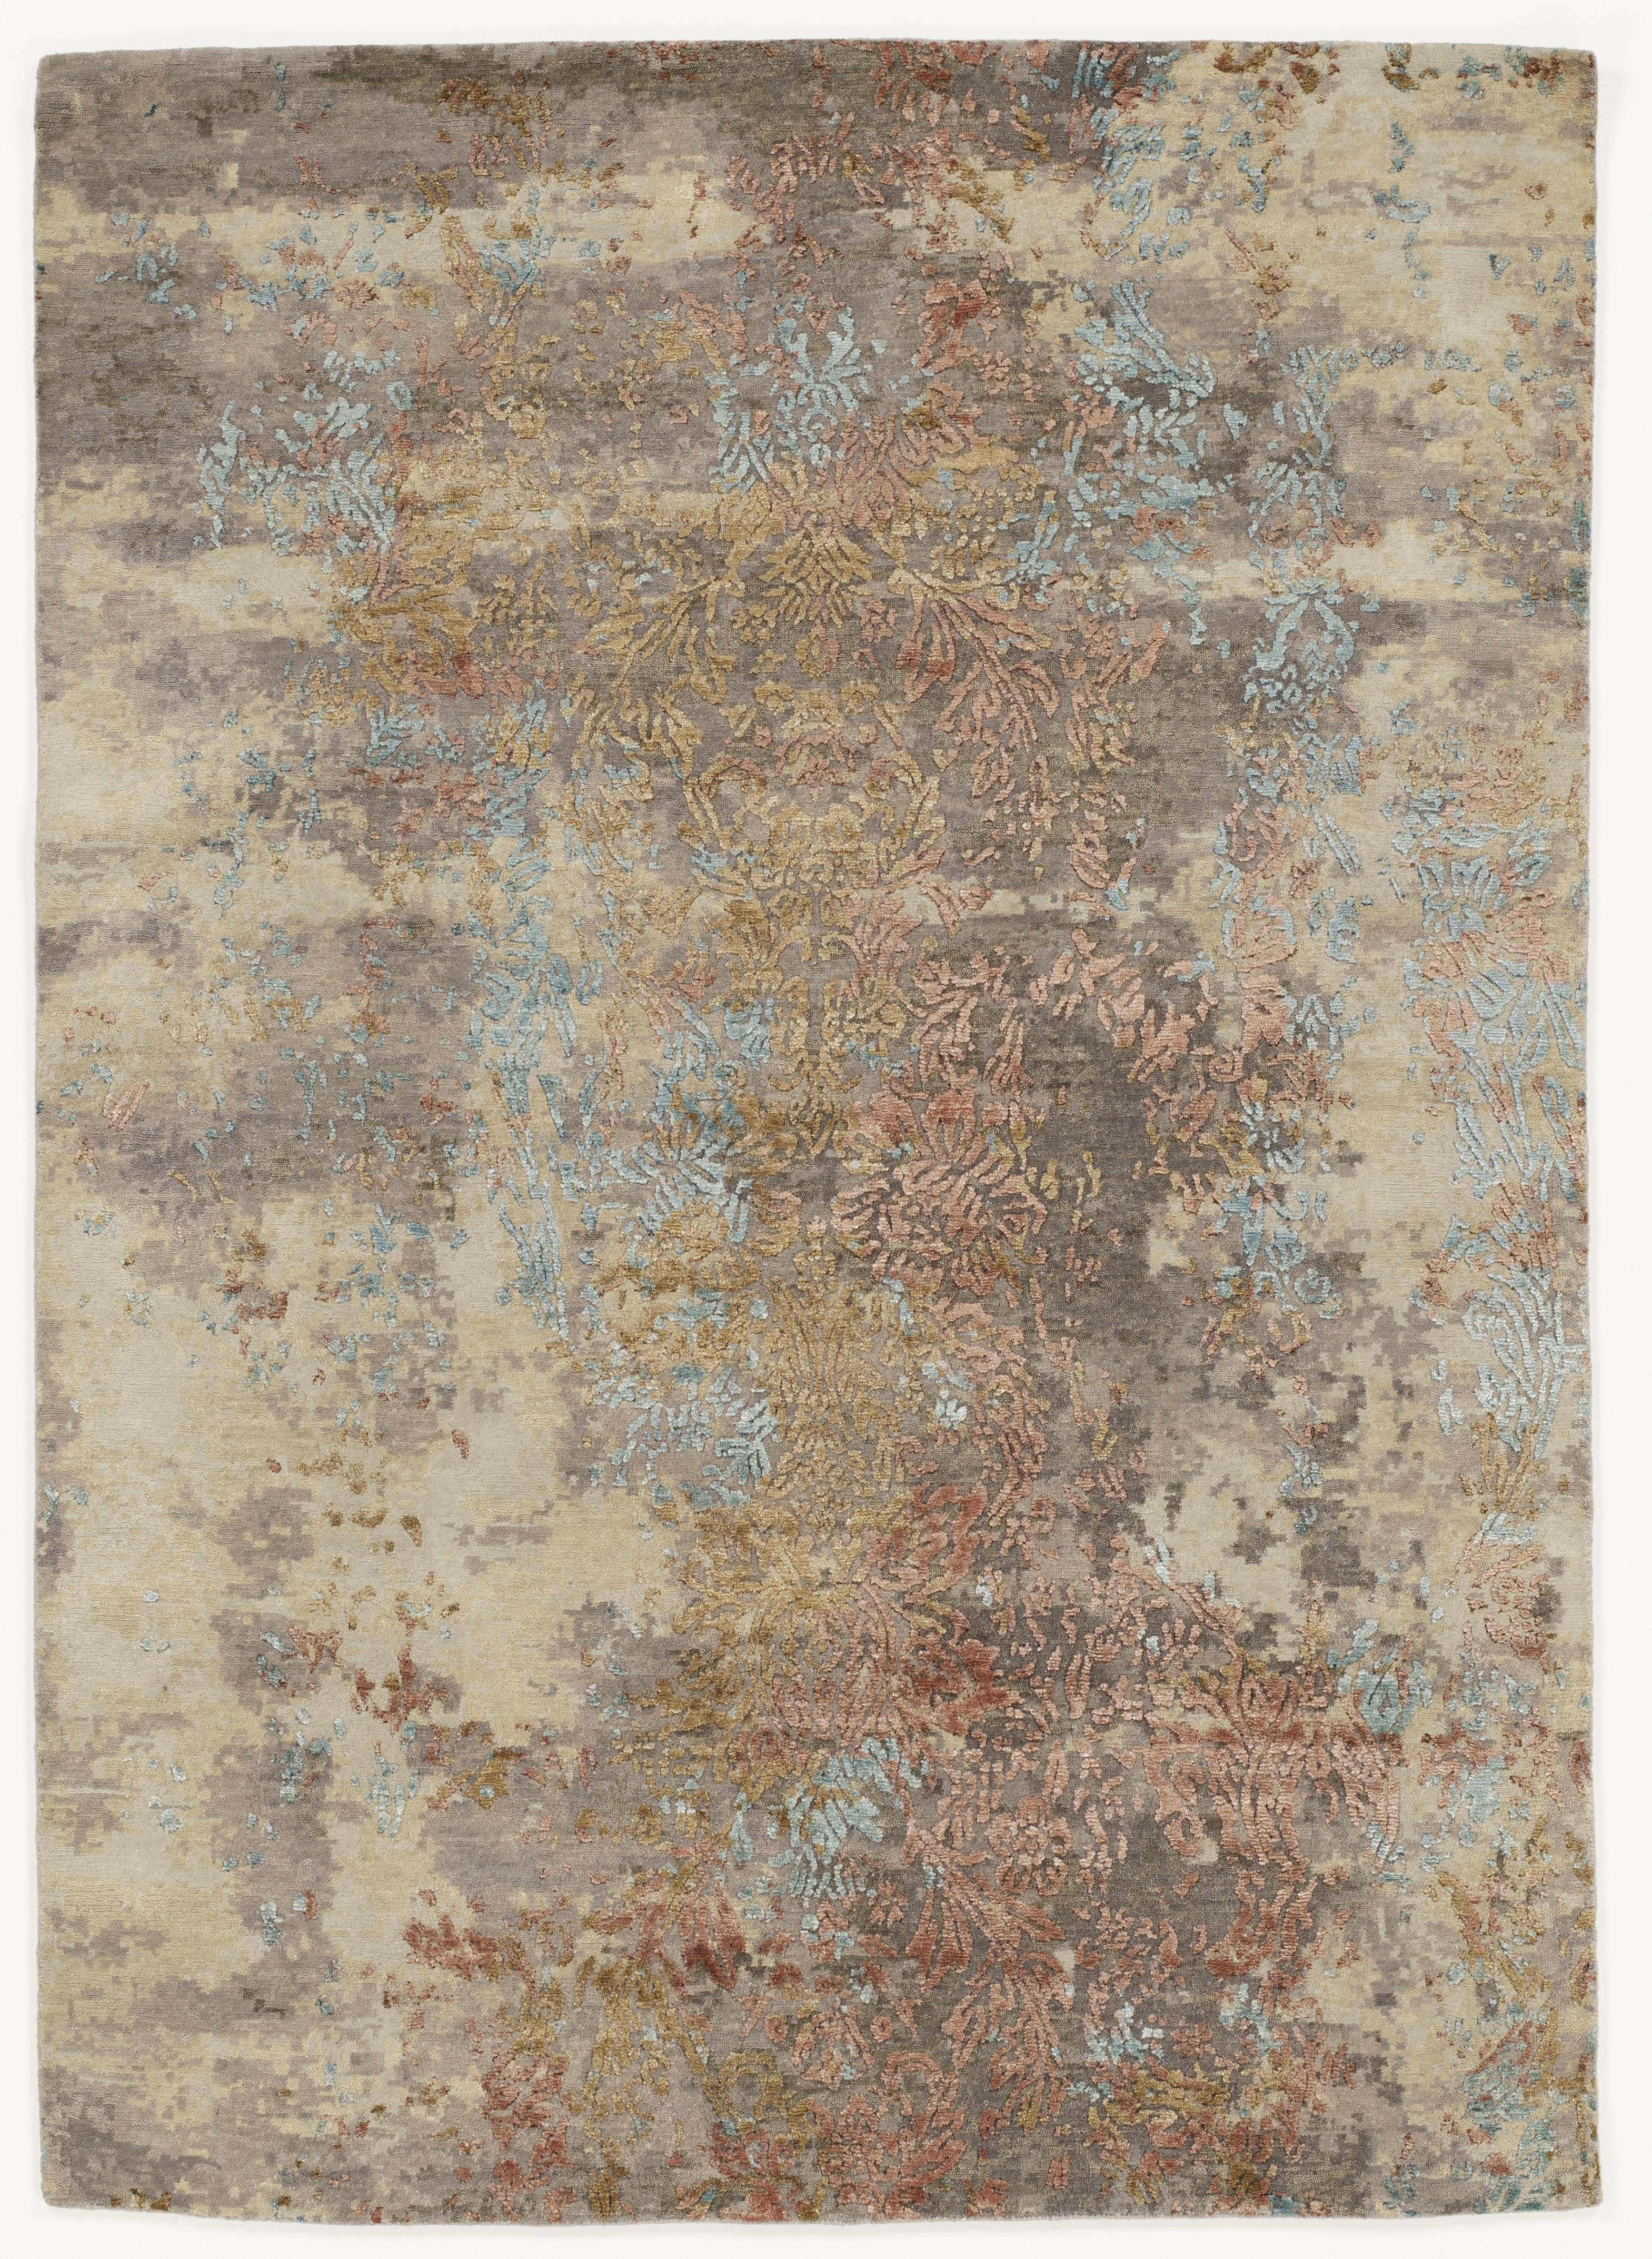 ORIENTTEPPICH  250/350 cm  Multicolor   - Multicolor, Design, Textil (250/350cm) - Musterring